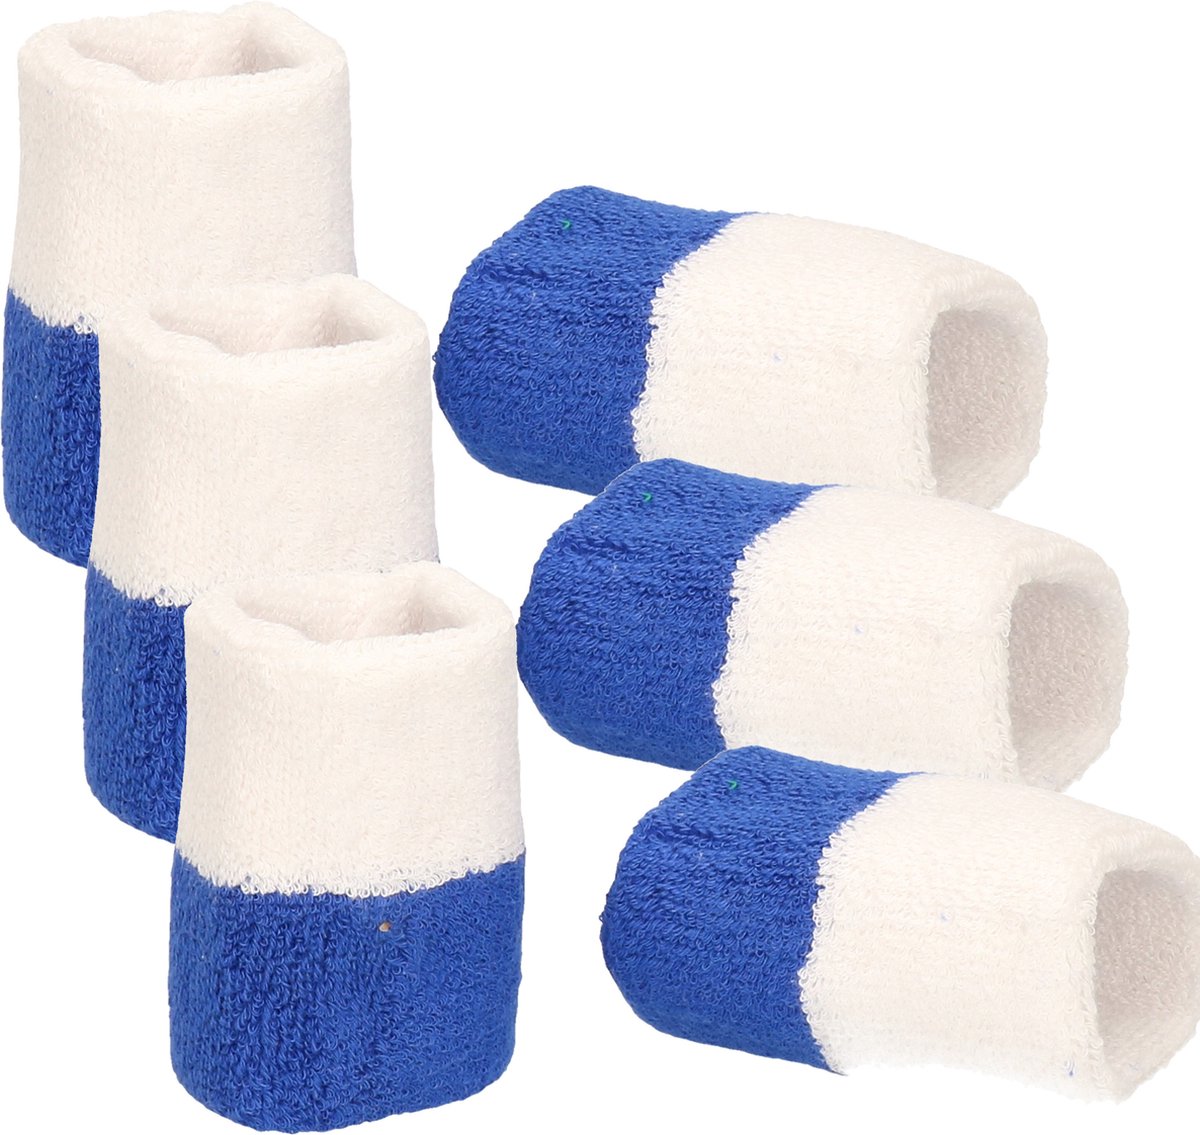 Pols zweetbandjes blauw/wit - voor volwassenen - 6x stuks - Sport accessoires